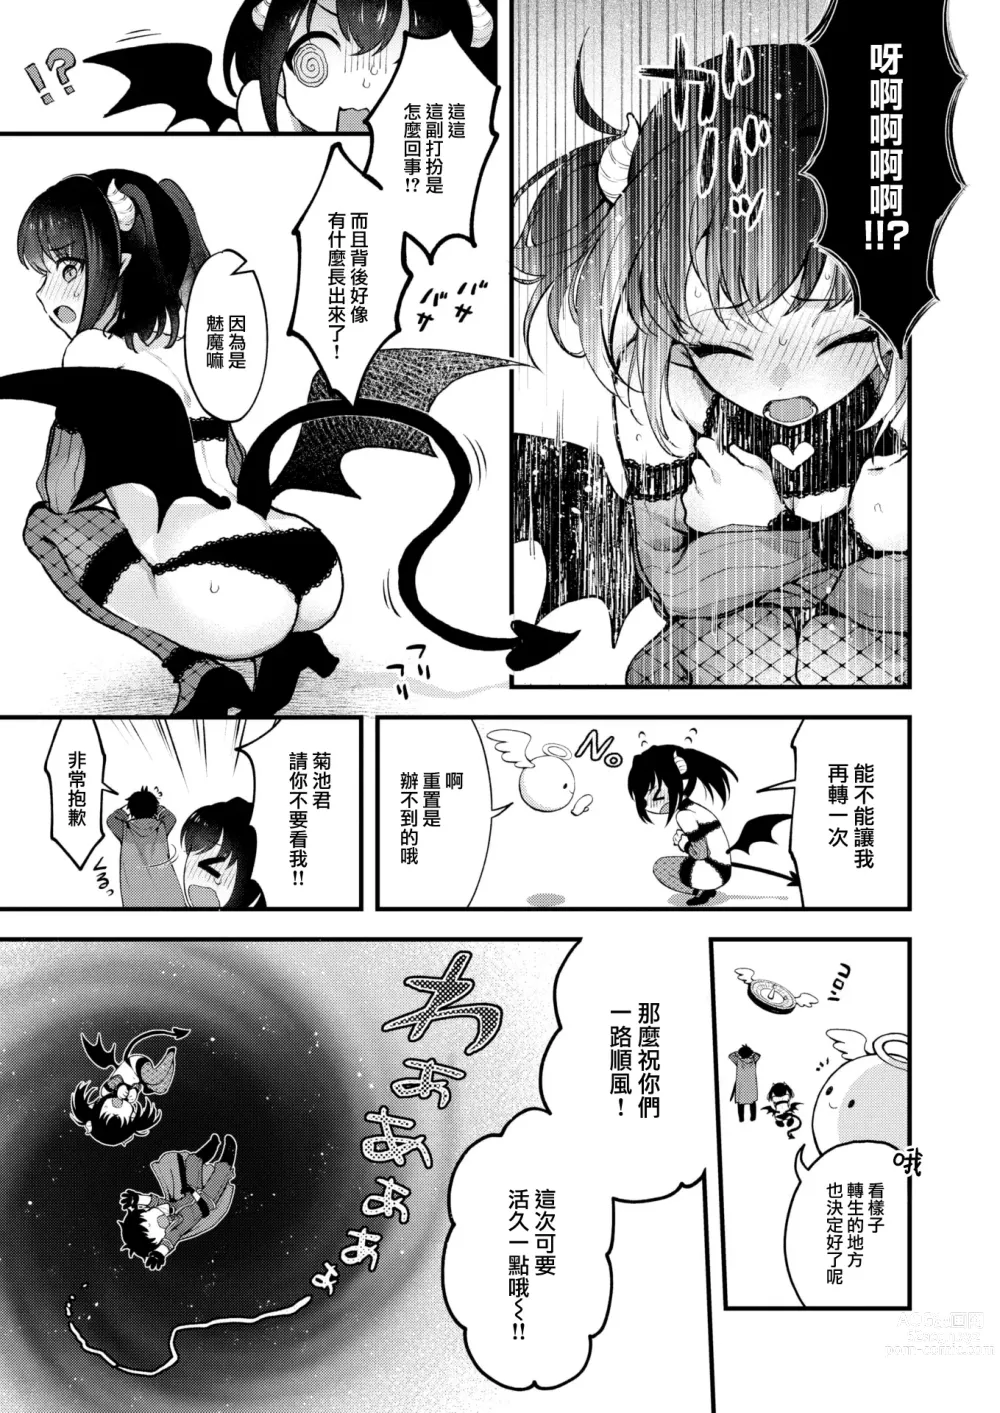 Page 6 of manga Changing!